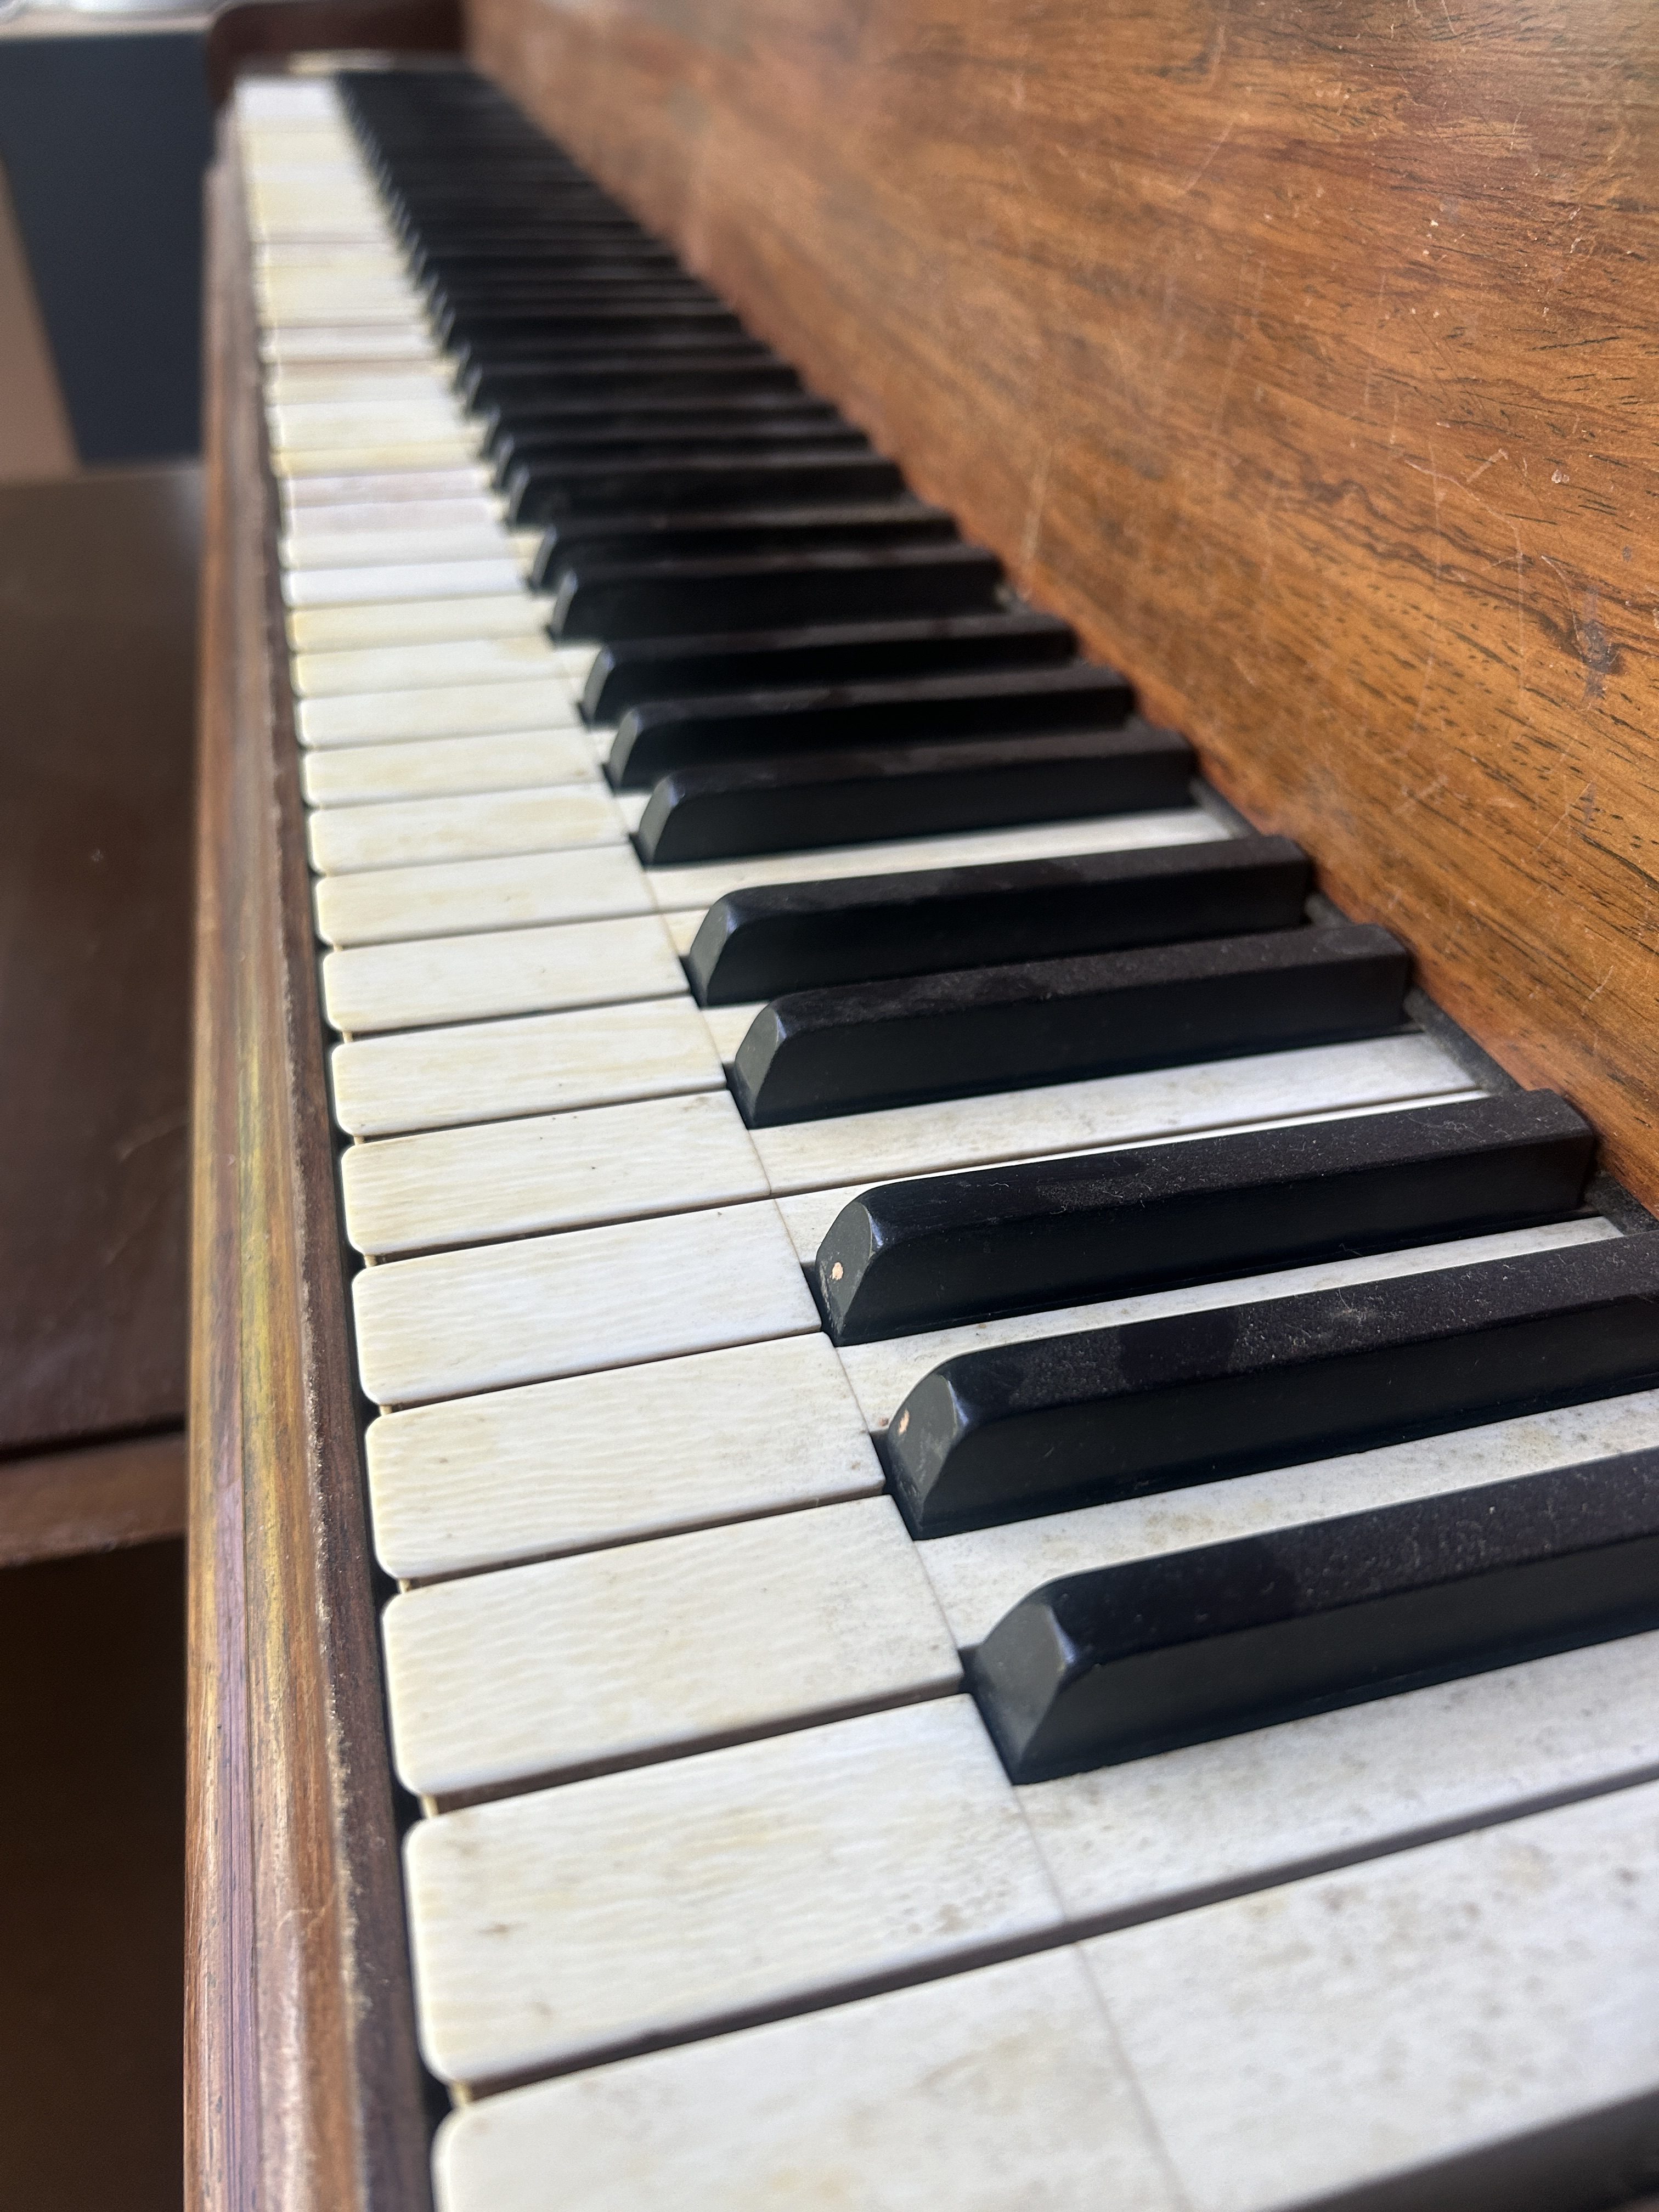 vue en diagonale des touches d'un piano ancien? les touches sont en ivoire vieilli, tâché et il en manque quelques unes pour illustrer l'utilisation de l'ivoire